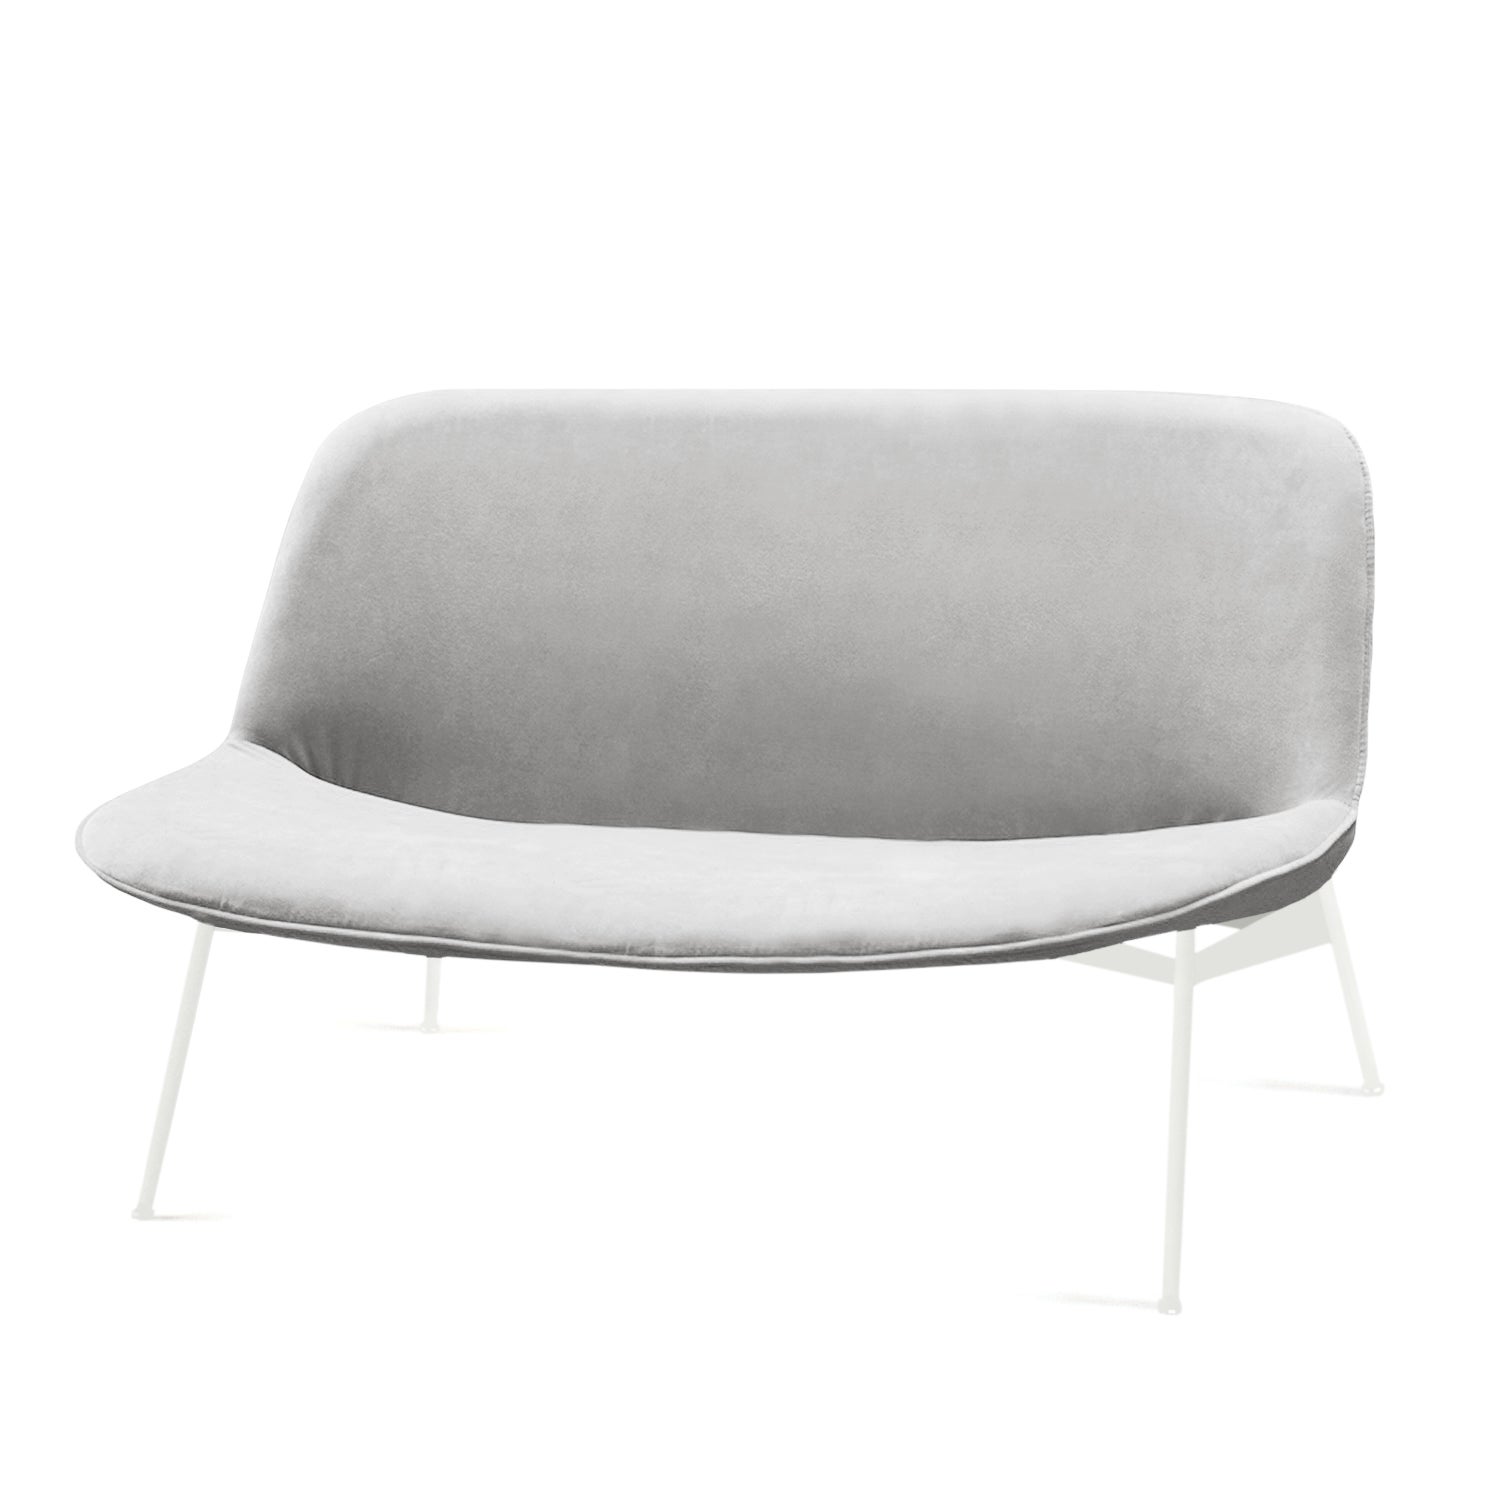 Chiado Sofa, Small with Aluminium and White